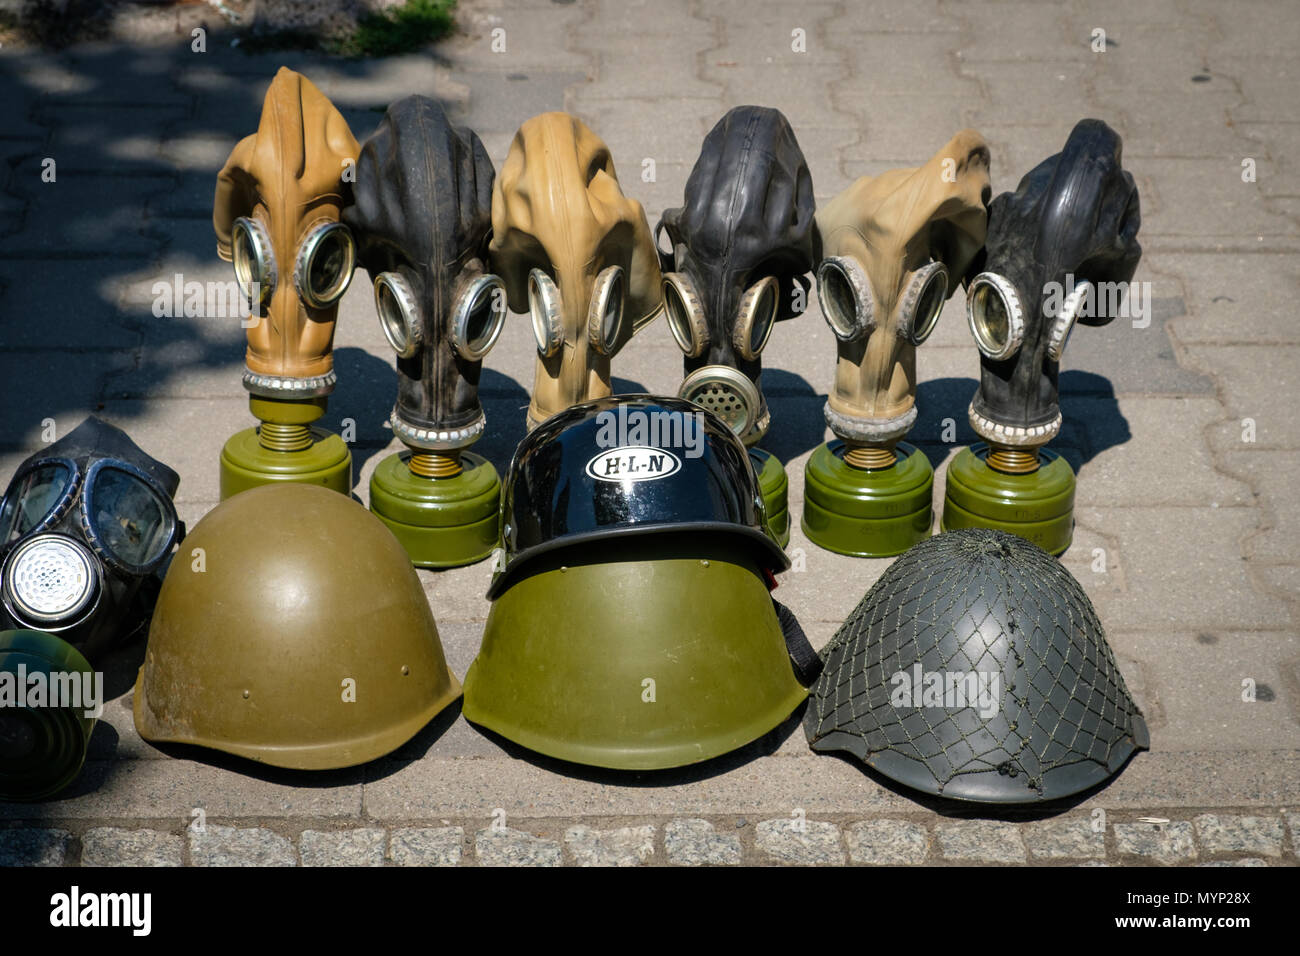 Maschere a gas della seconda guerra mondiale visualizzato sulla strada per turisti come souvenir Foto Stock